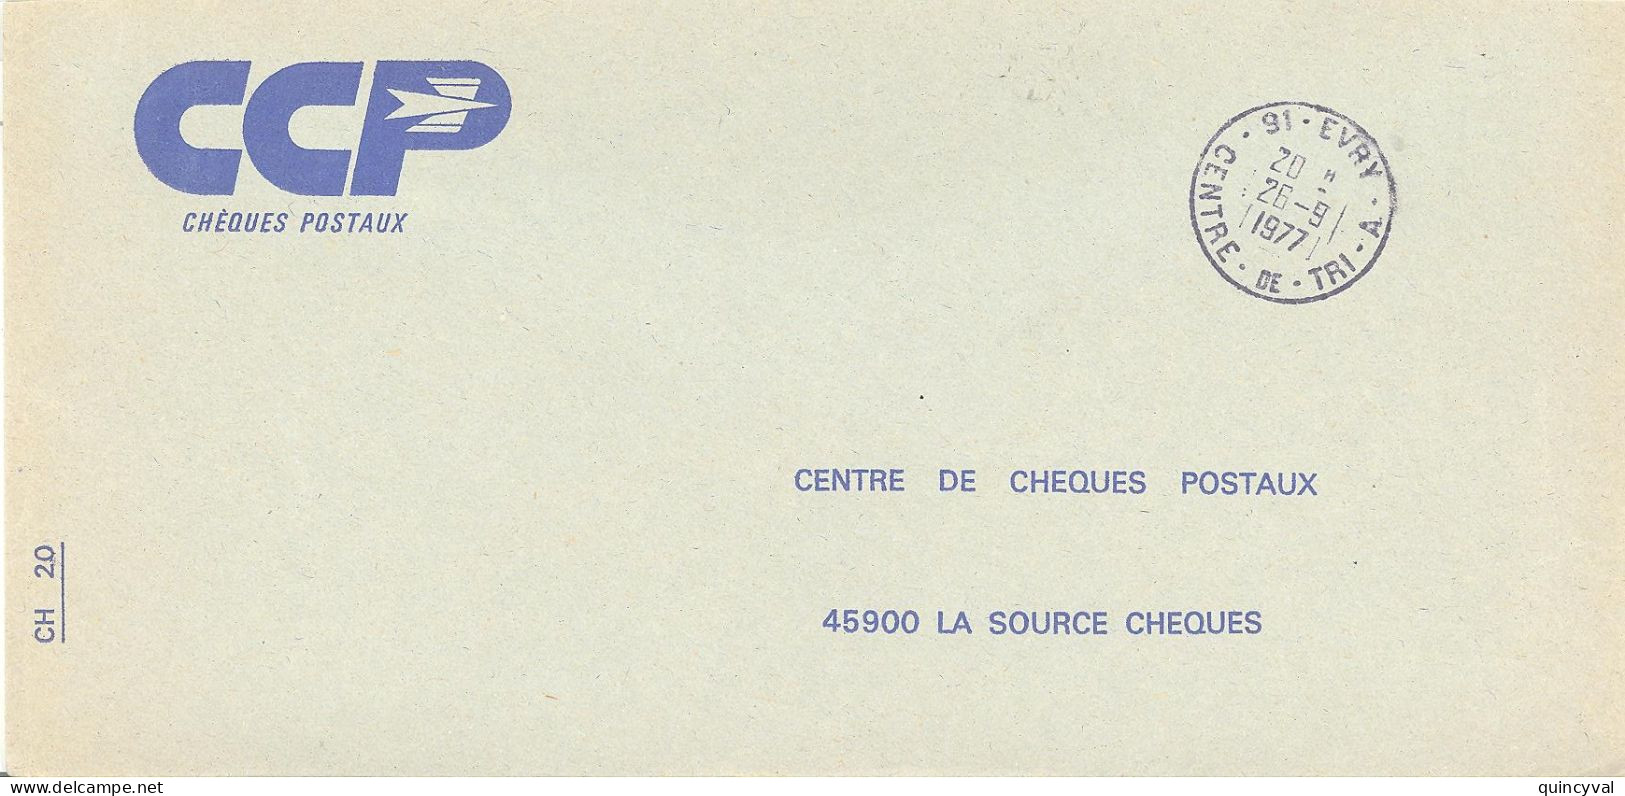 91 EVRY  CENTRE DE TRI  A   Lettre Enveloppe Des CCP Ob26 9 1977 - Handstempels